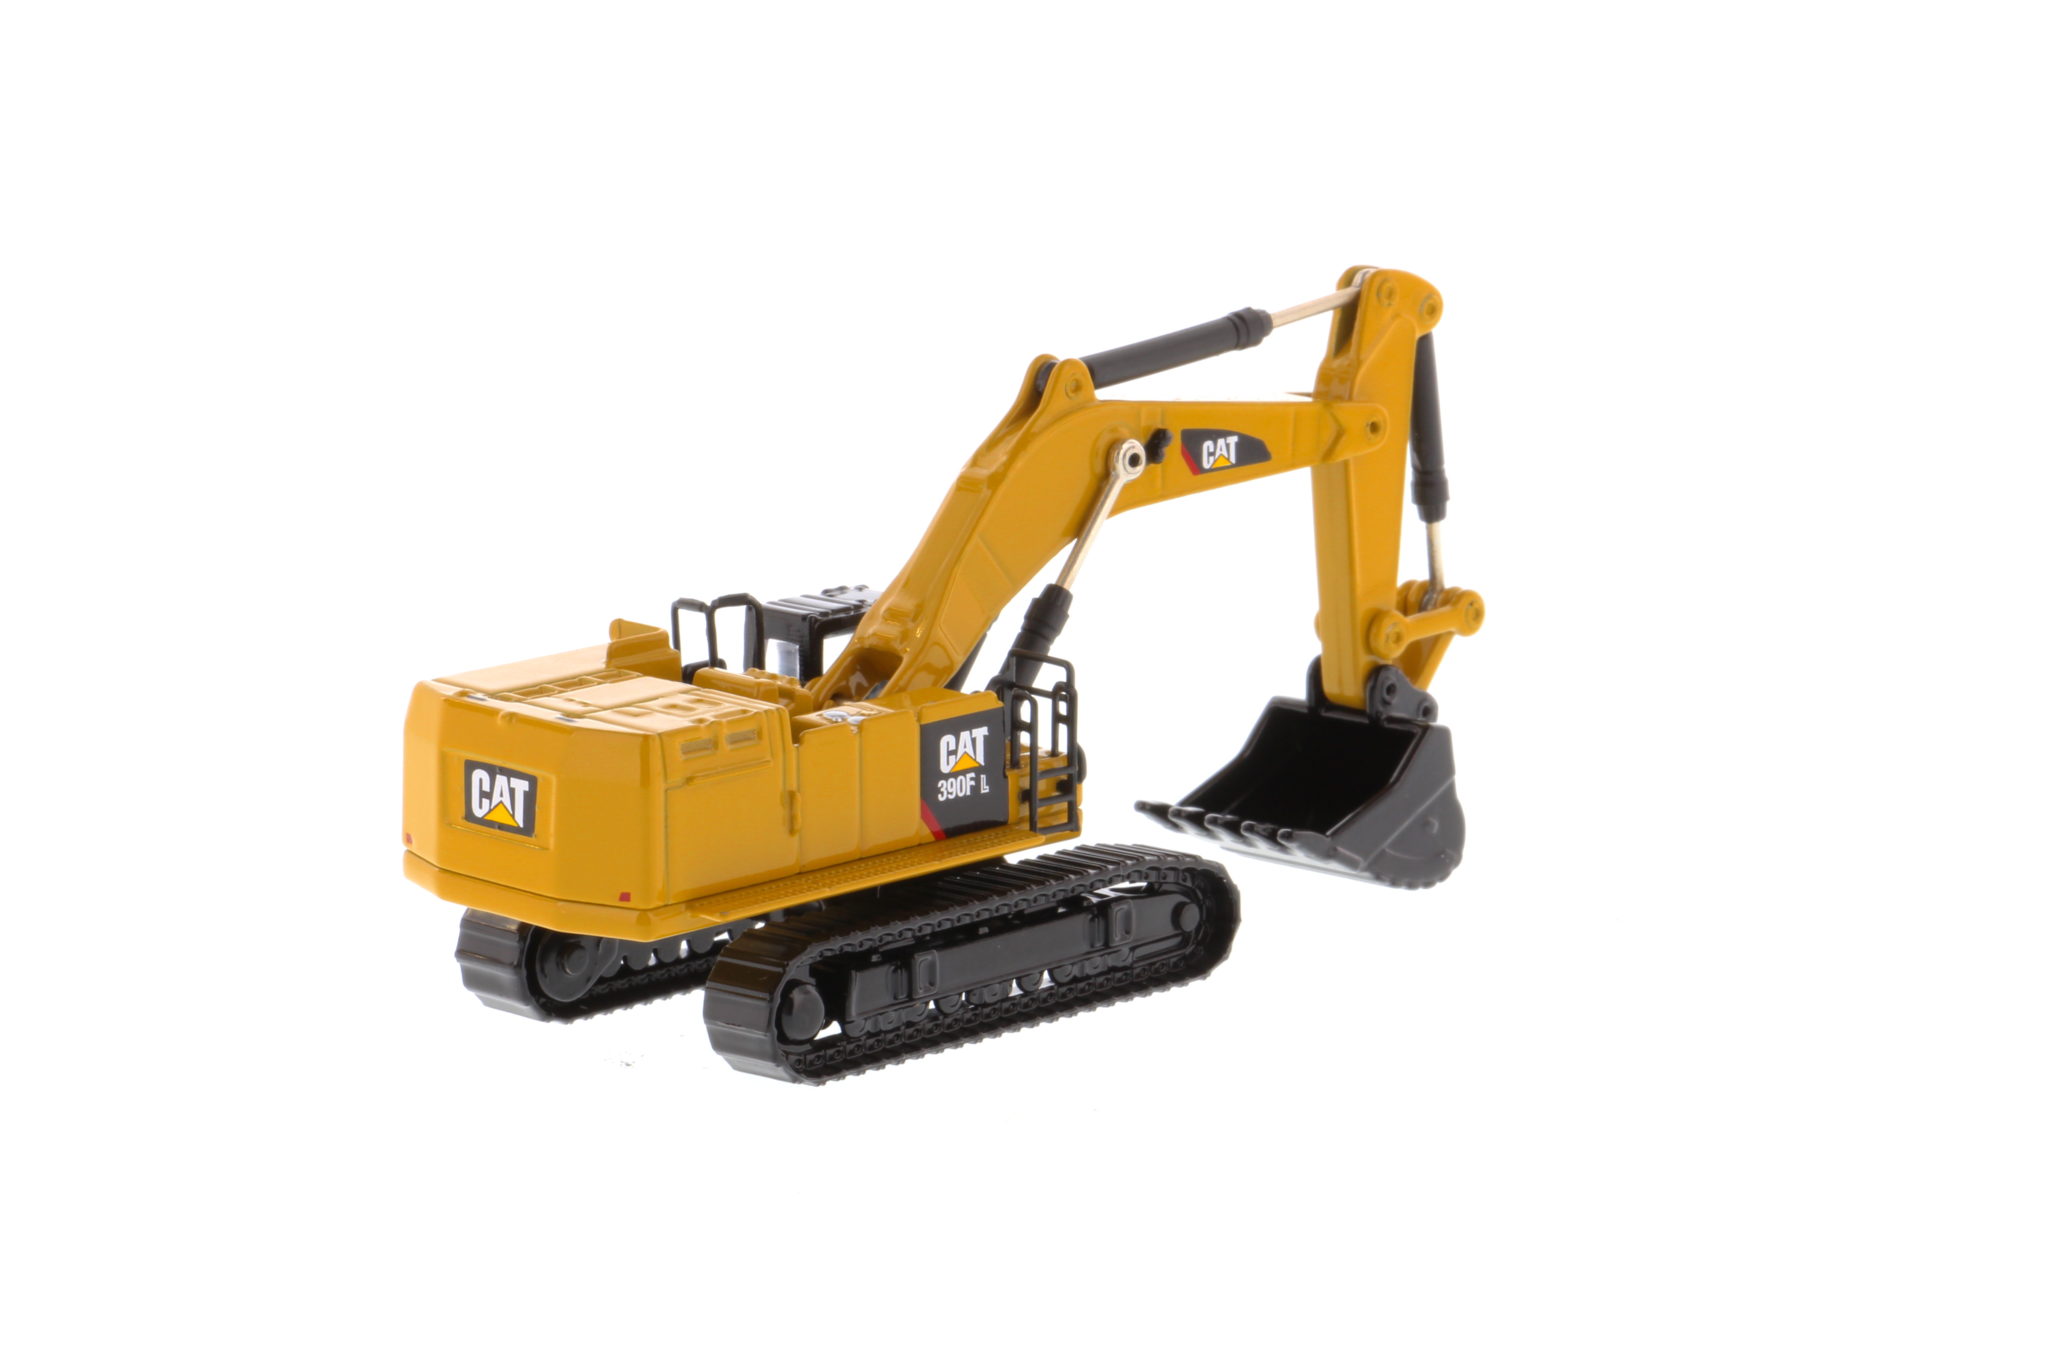 Cat Diecast 390F L Hydraulic Excavator 85537 Elite Series 1:125 scale